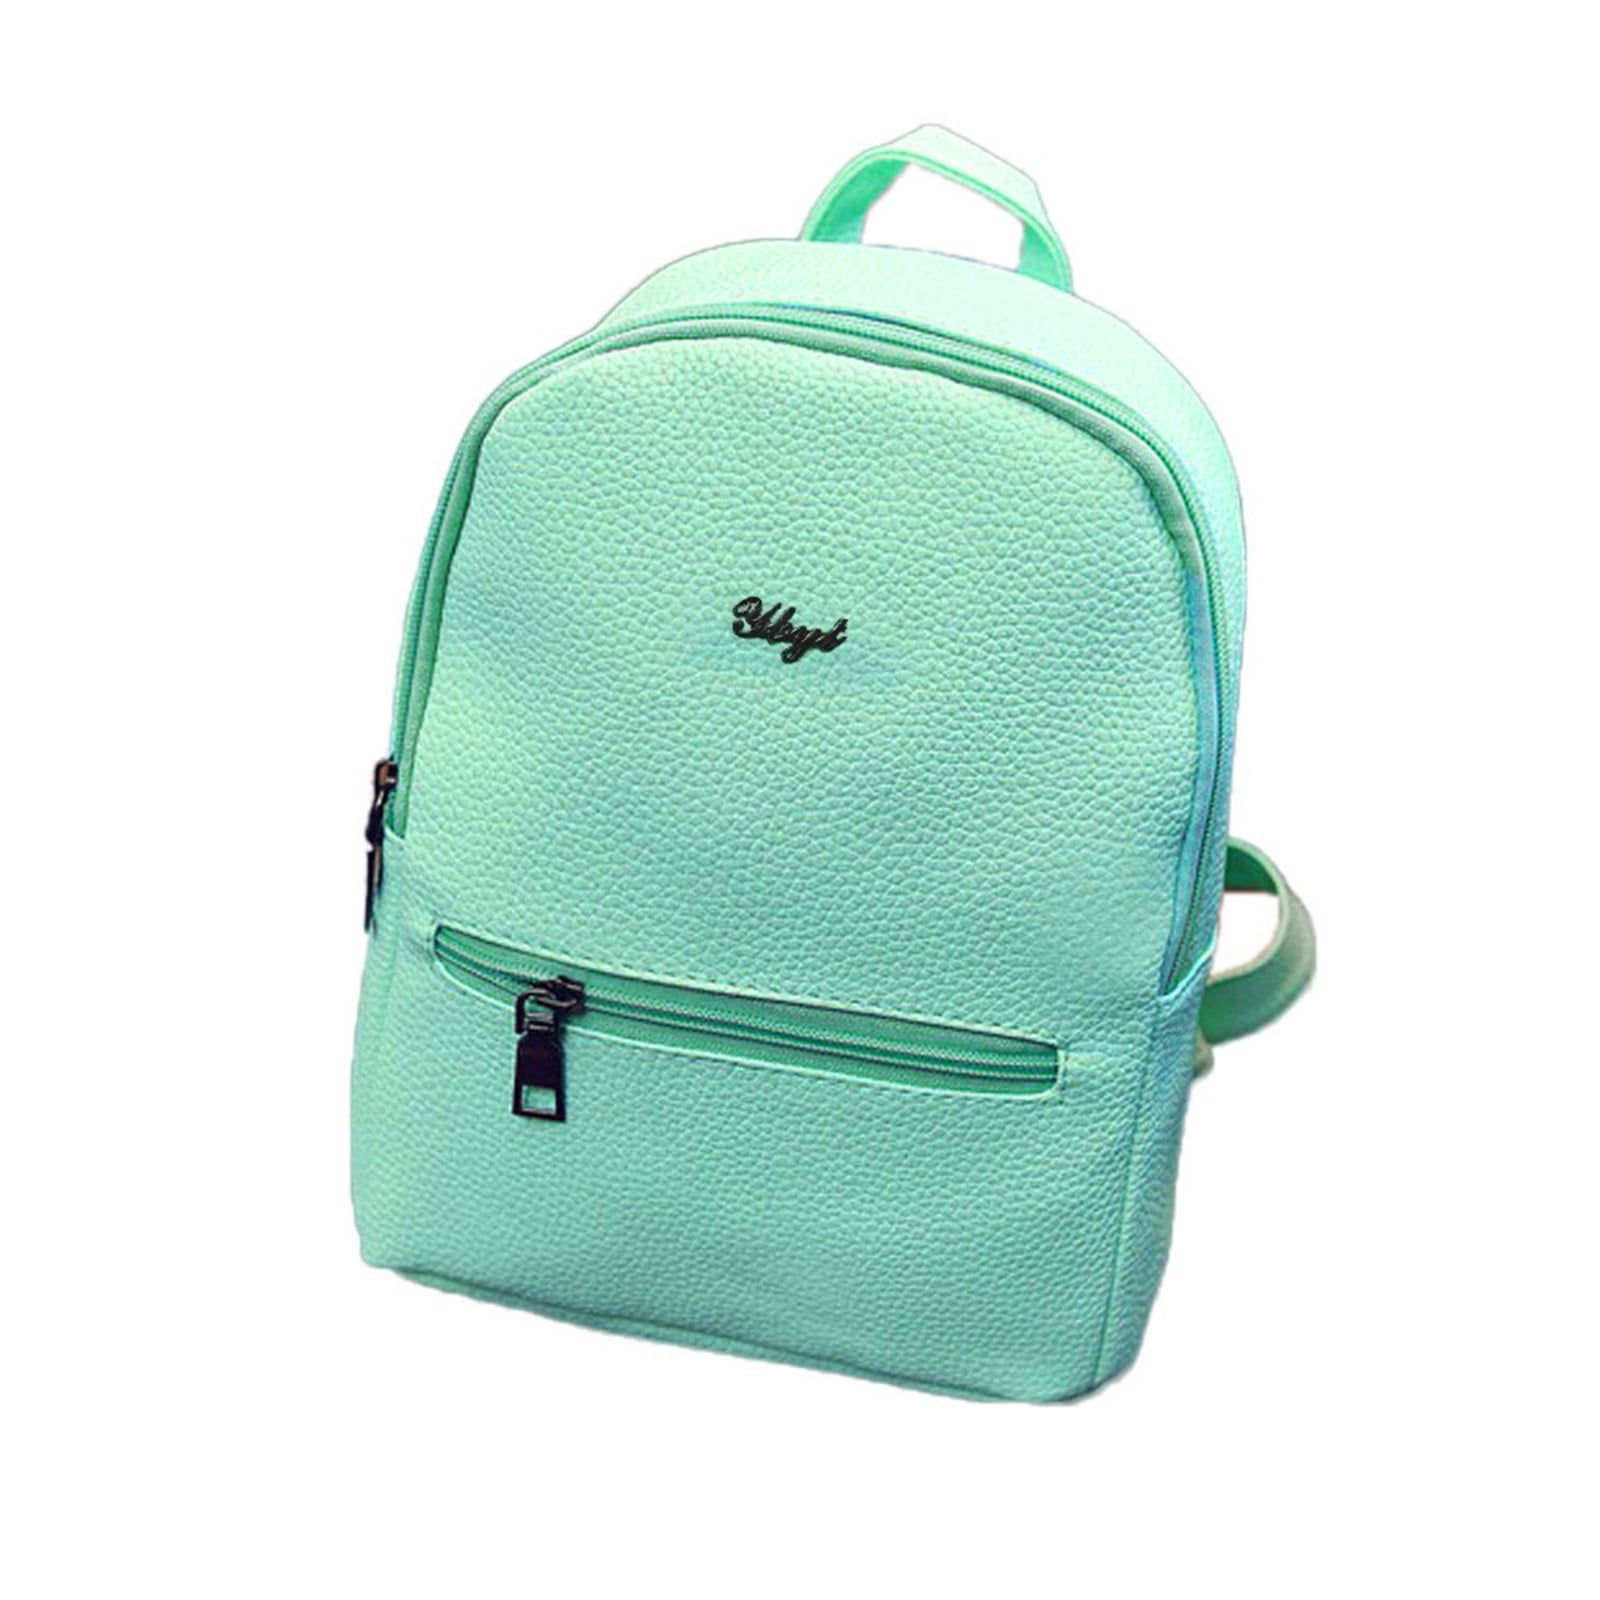 The Vector Logo Cat Women Backpack School Bag Shoulder Bag Female Bagpack Laptop Back Packs Leather School Bagsl